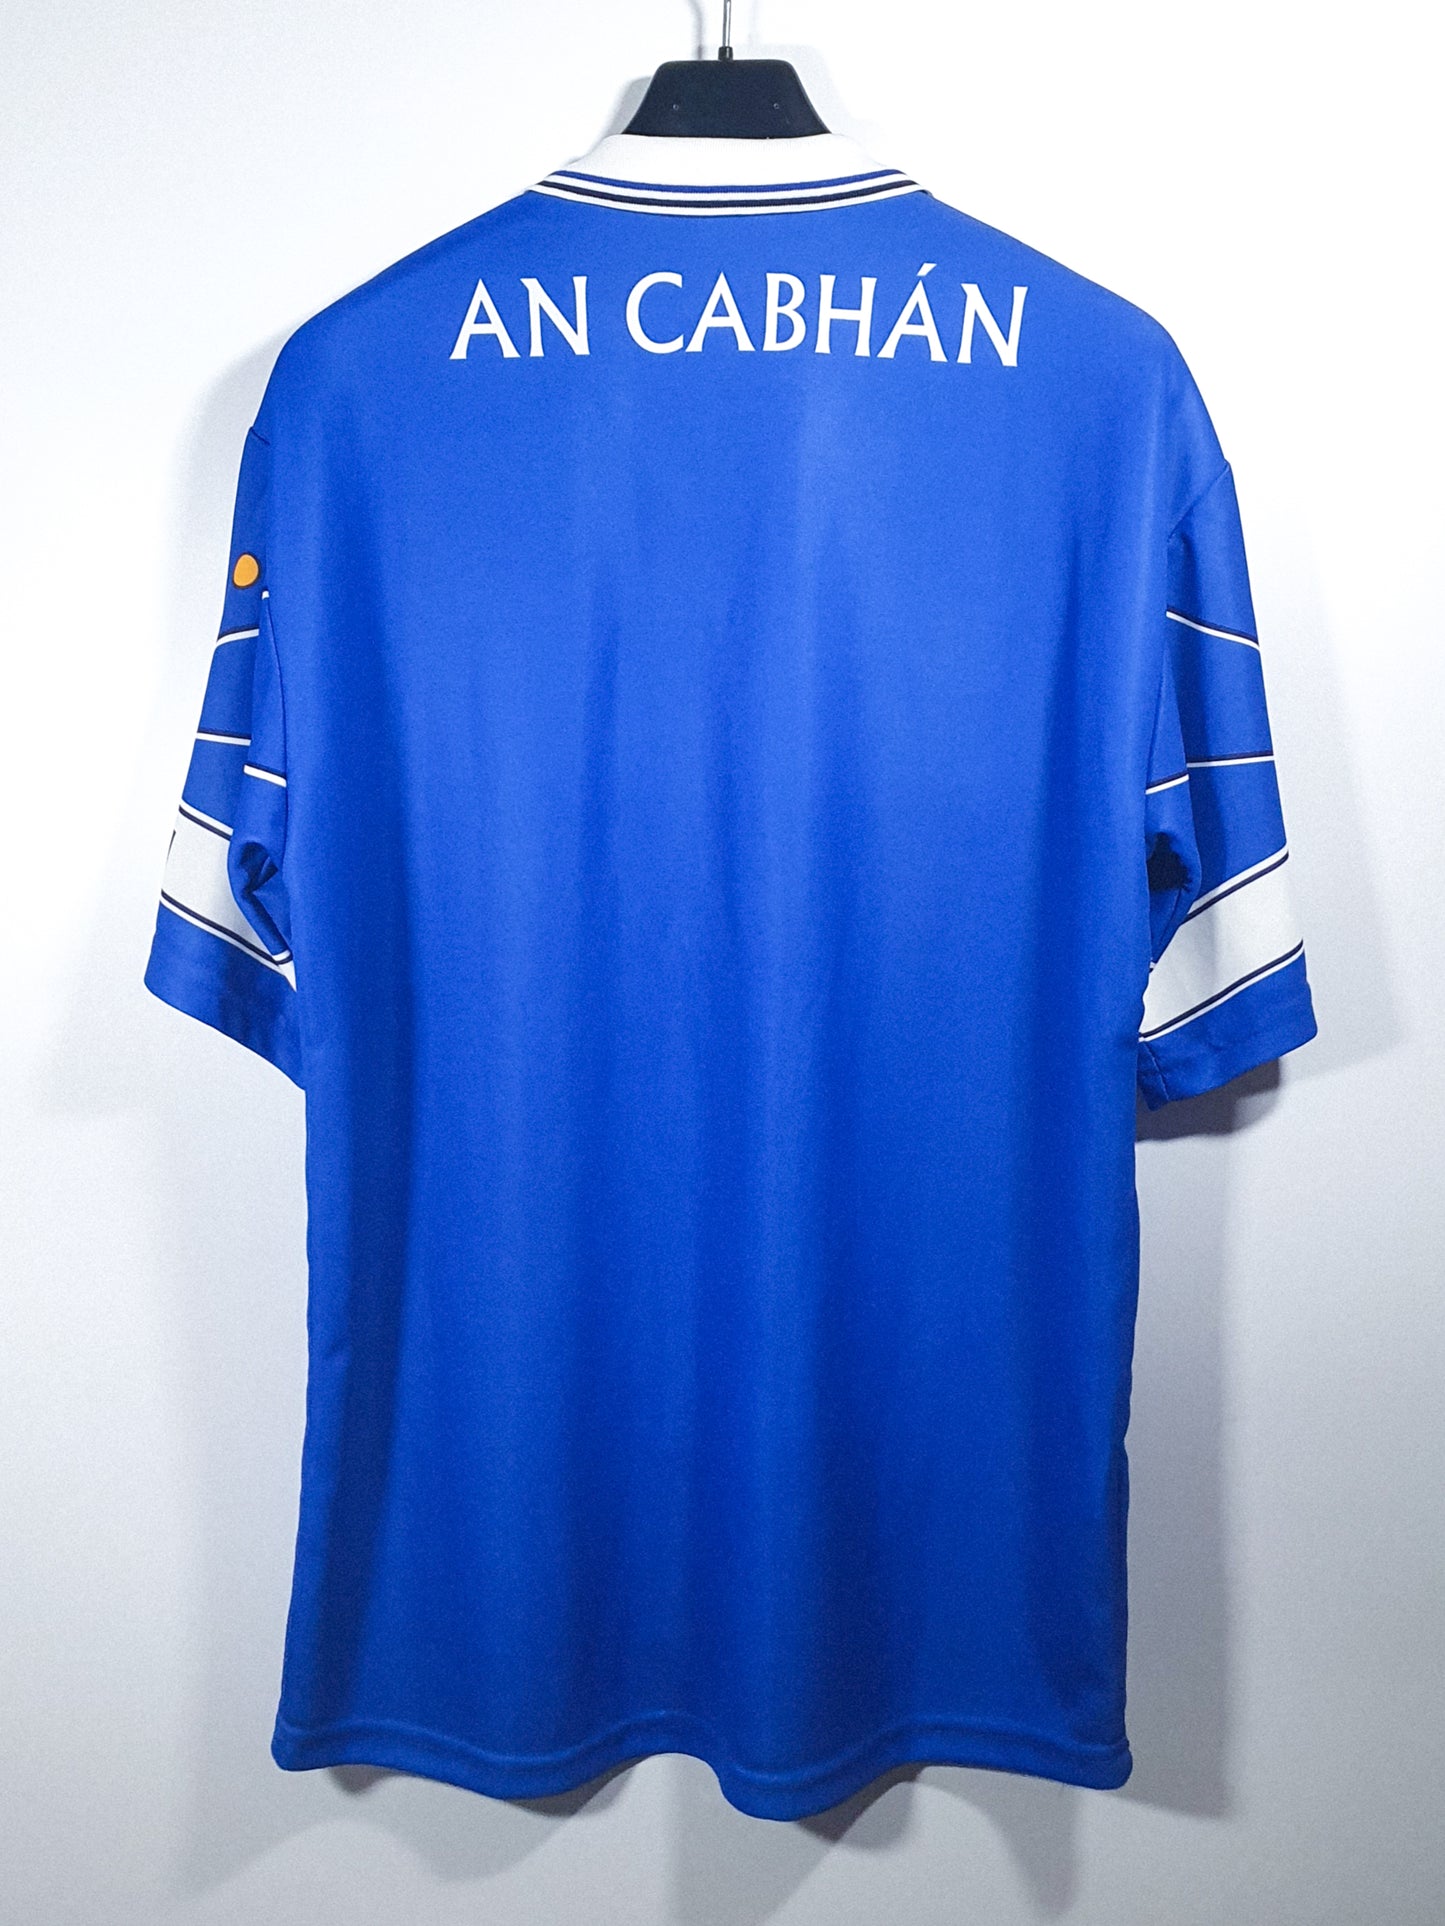 Cavan 2001 (M)